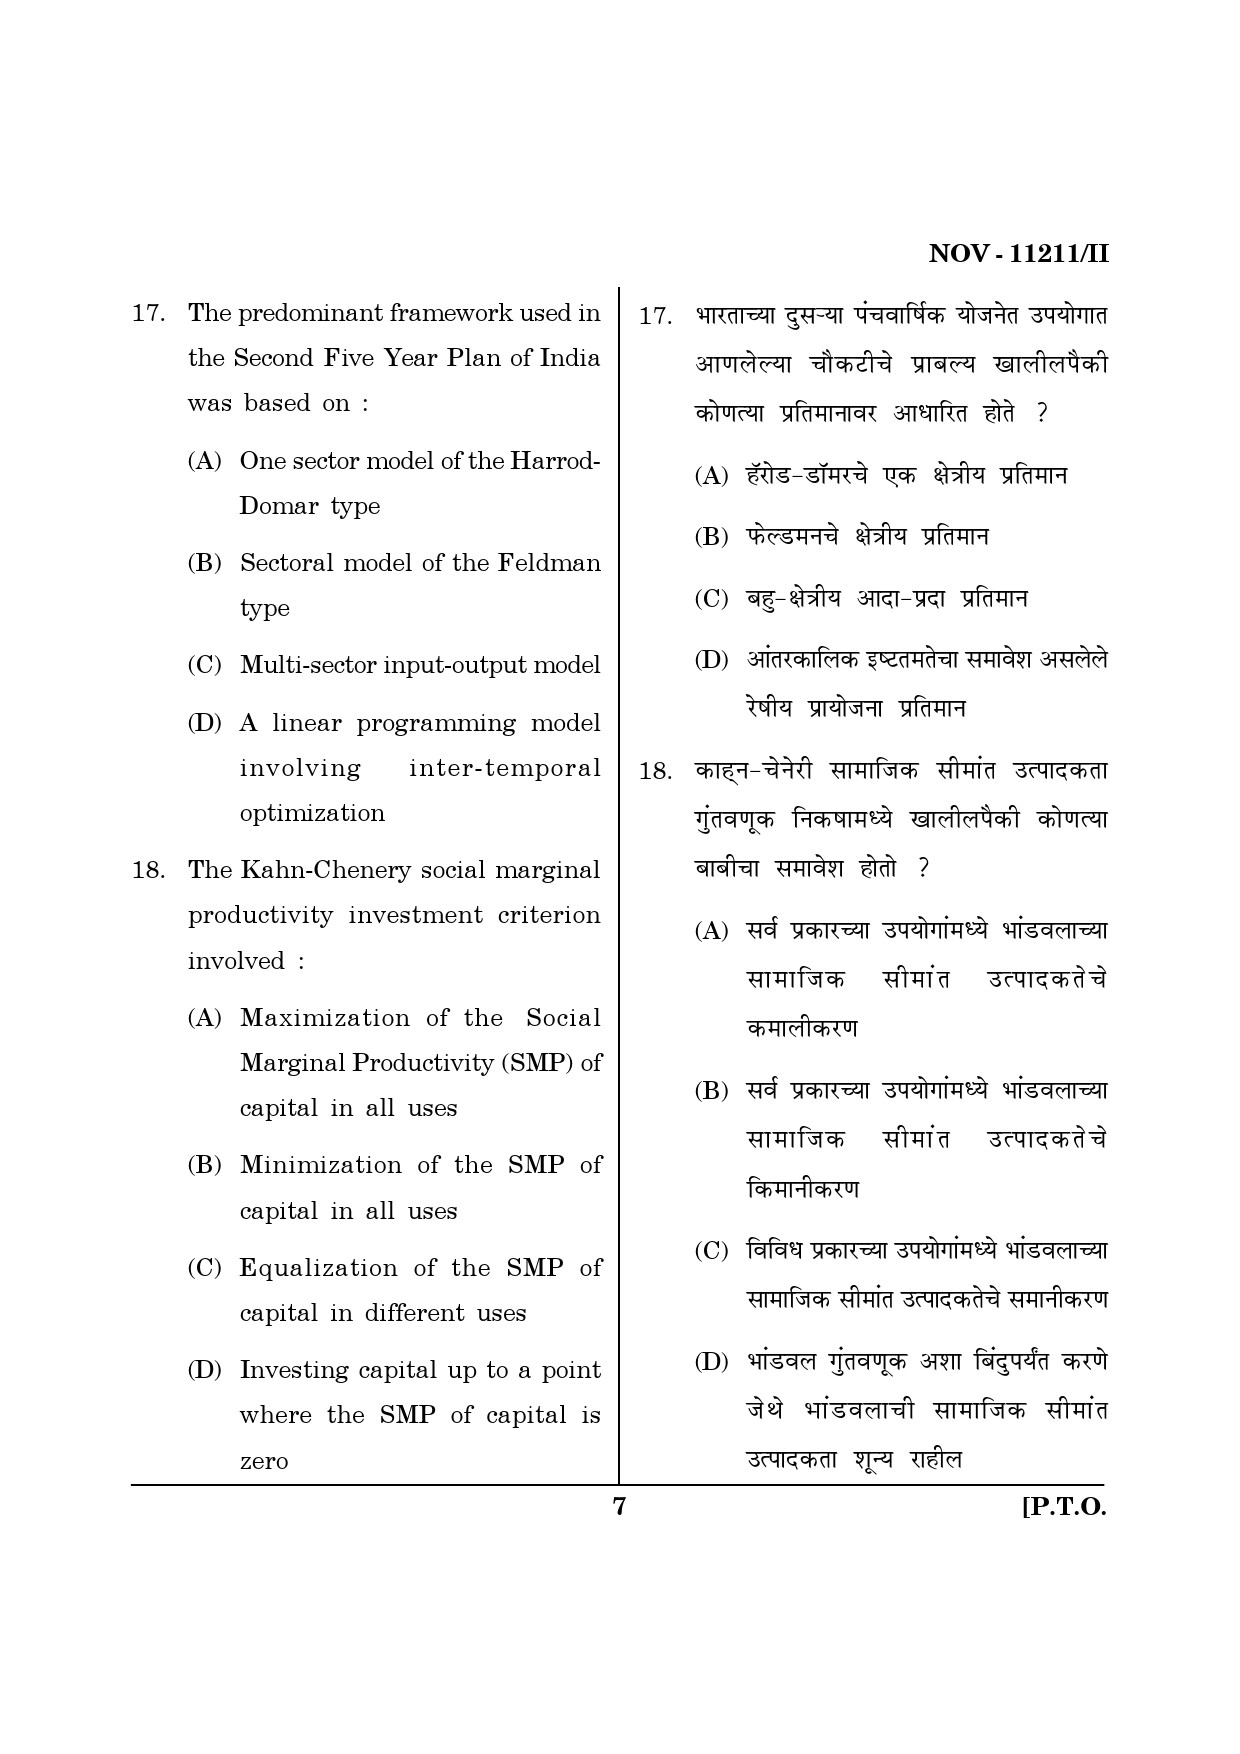 Maharashtra SET Economics Question Paper II November 2011 7